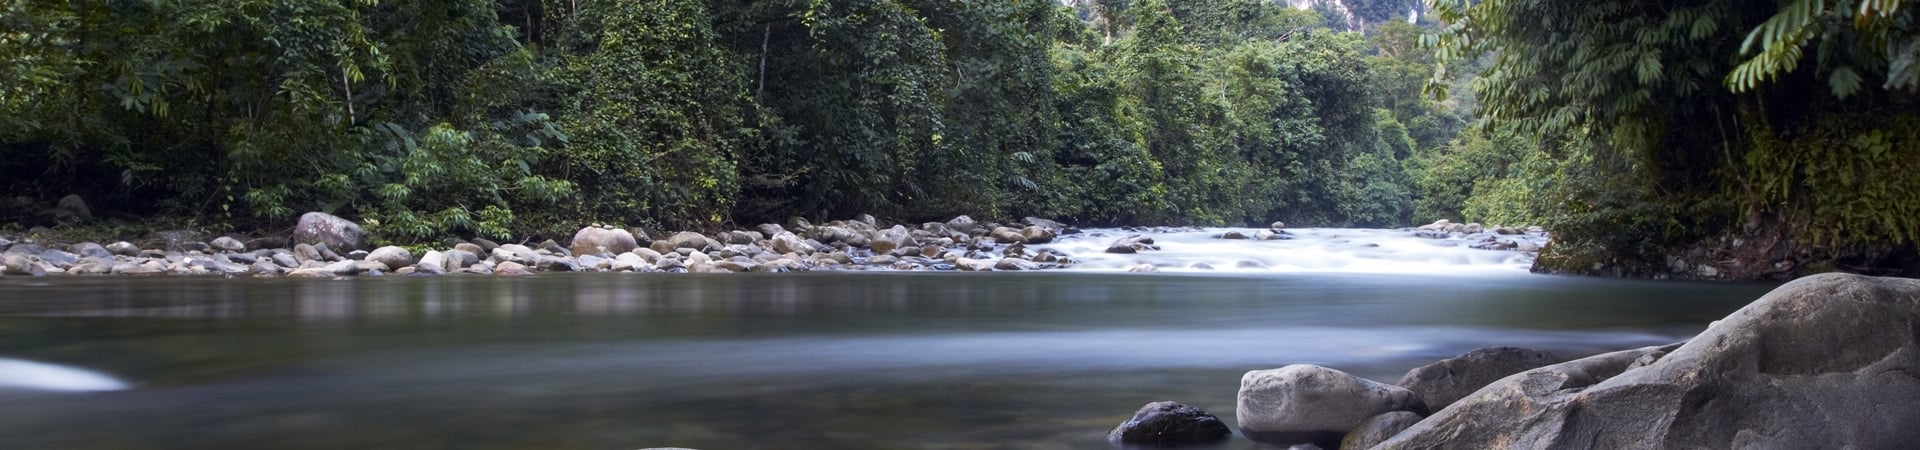 Image of World Heritage Sites of Borneo, Mulu and Kinabalu National Parks